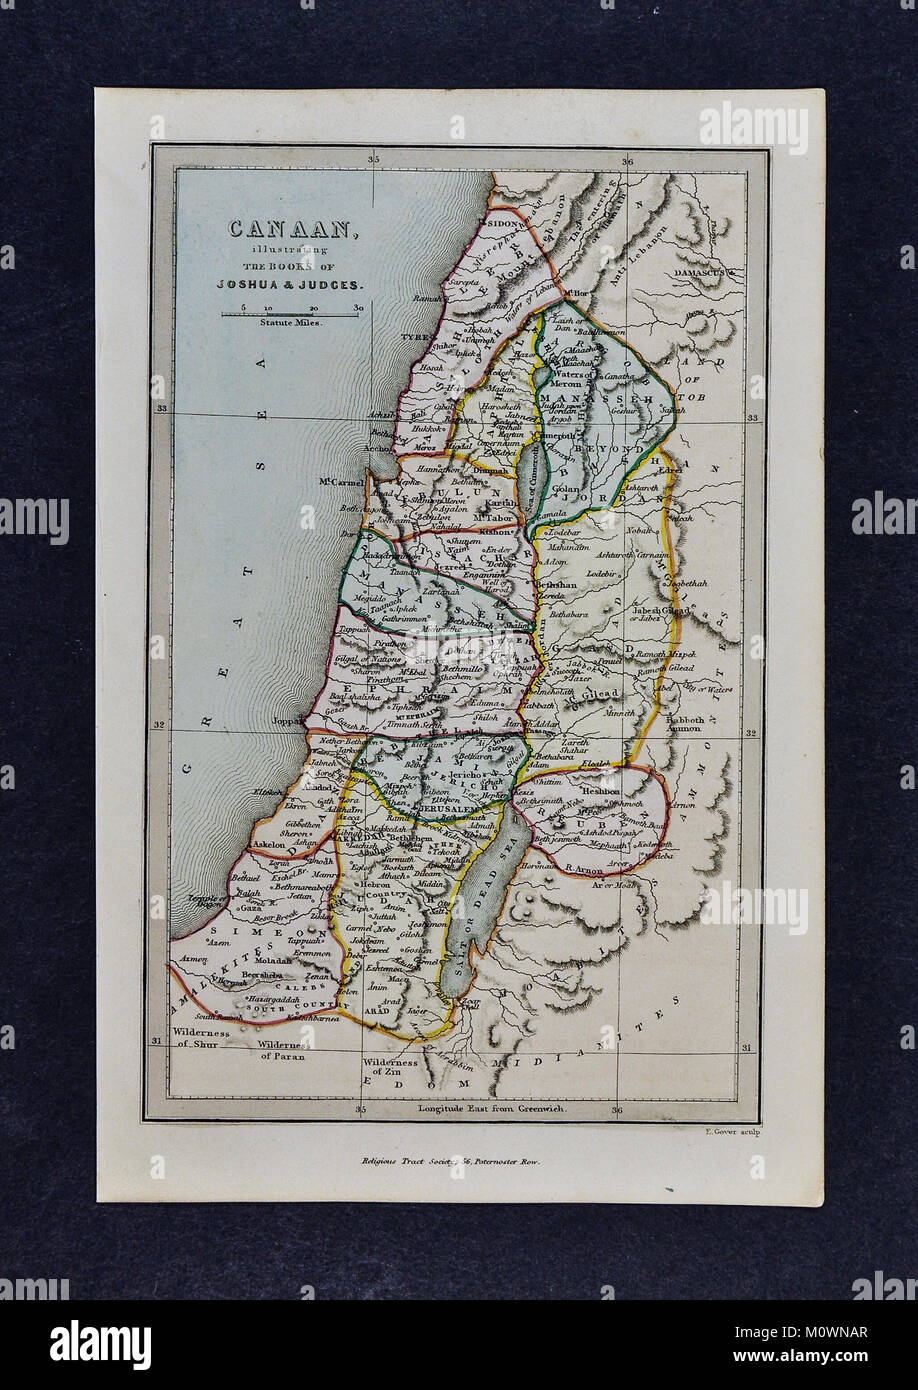 1799 La Bibbia Tract Society - Mappa di Canaan che illustra il Libro di Giosuè e giudici - Gerusalemme Israele Antico Testamento Foto Stock